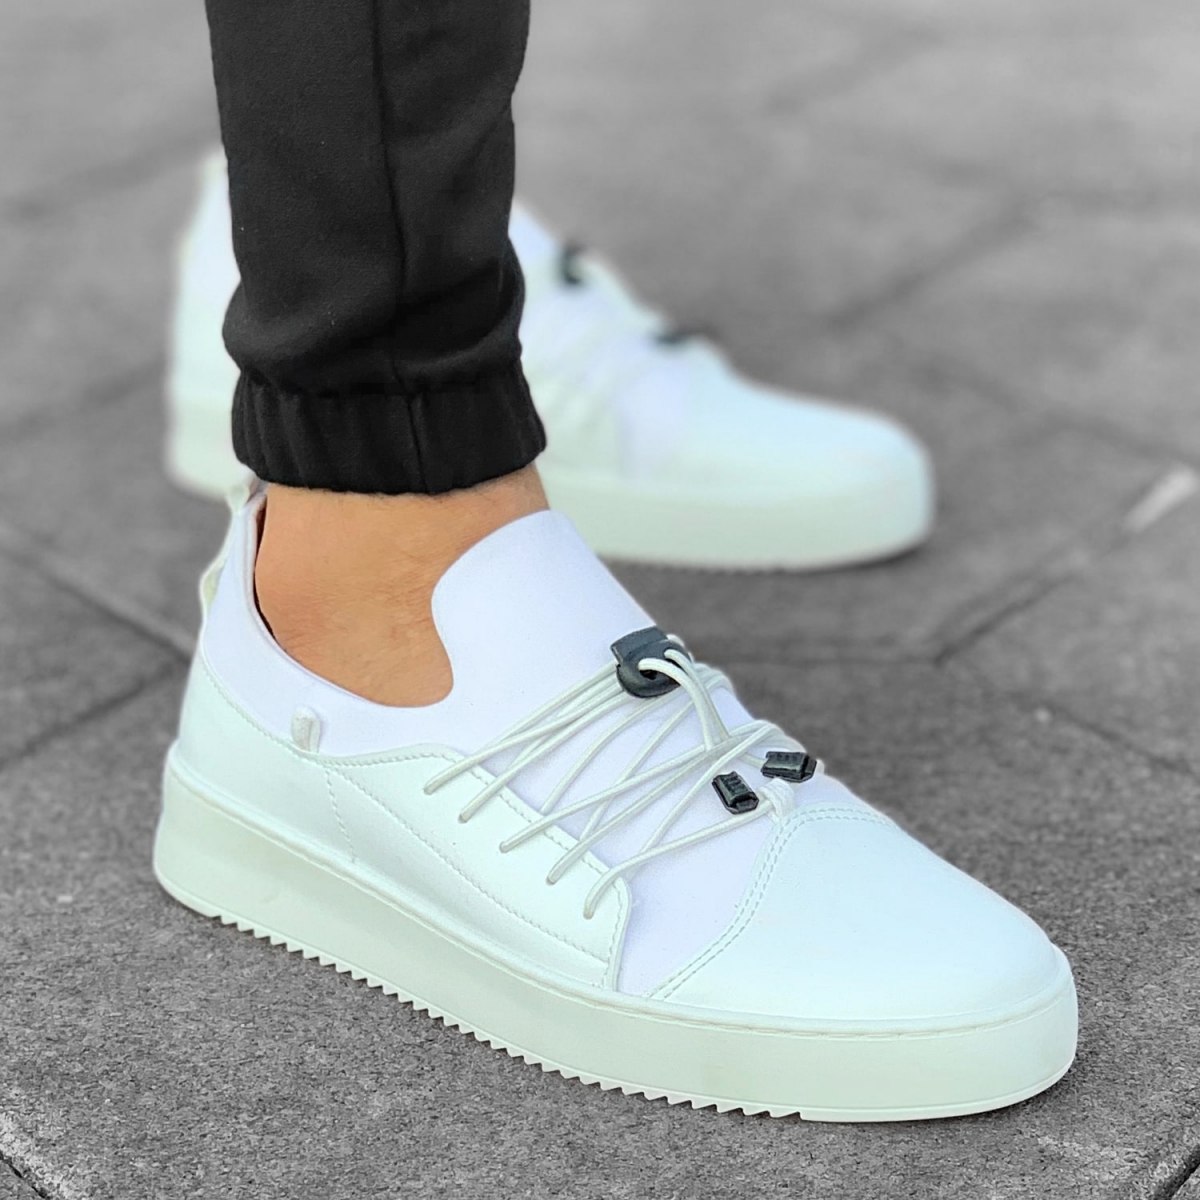 Martin Valen Men's New Design Sneakers Full White